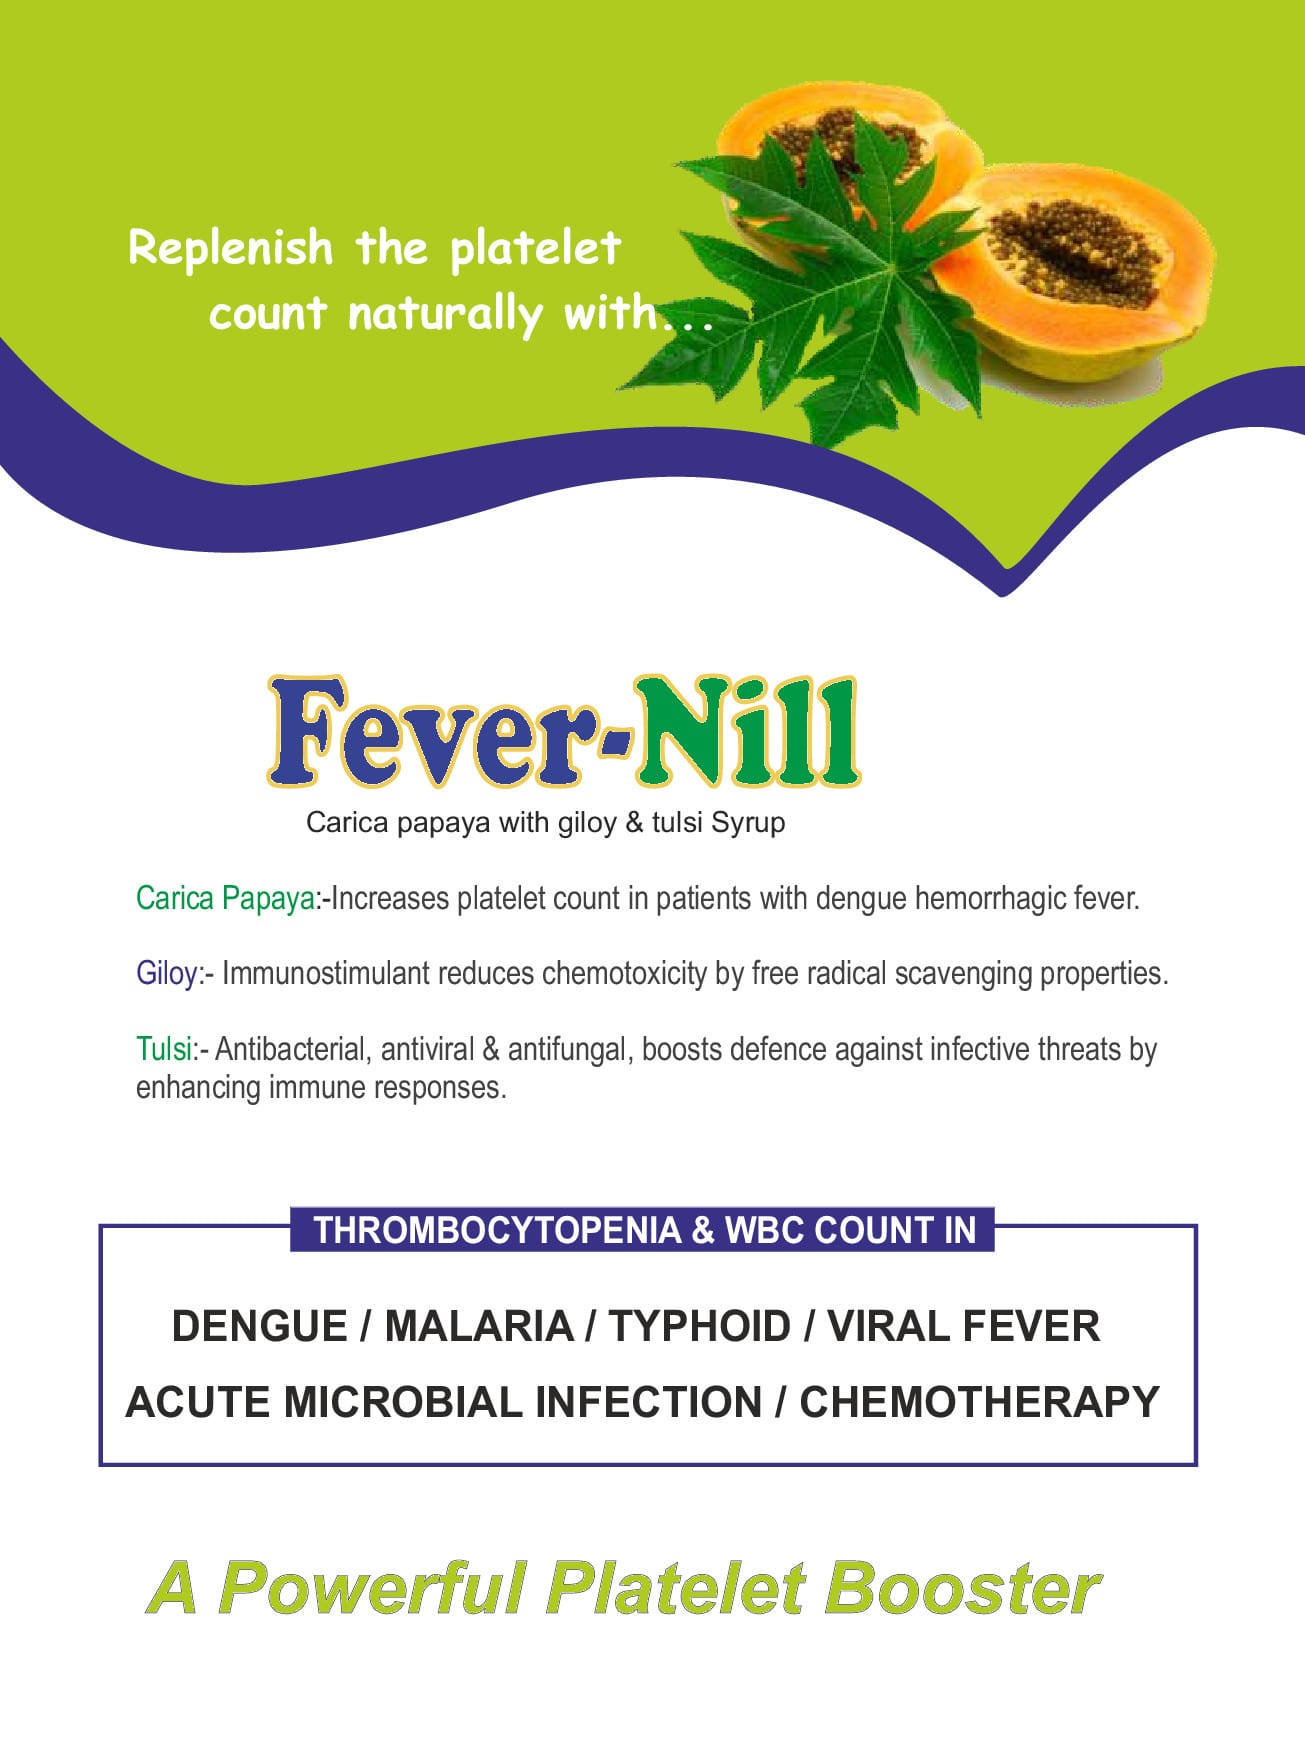 Fever-Nill